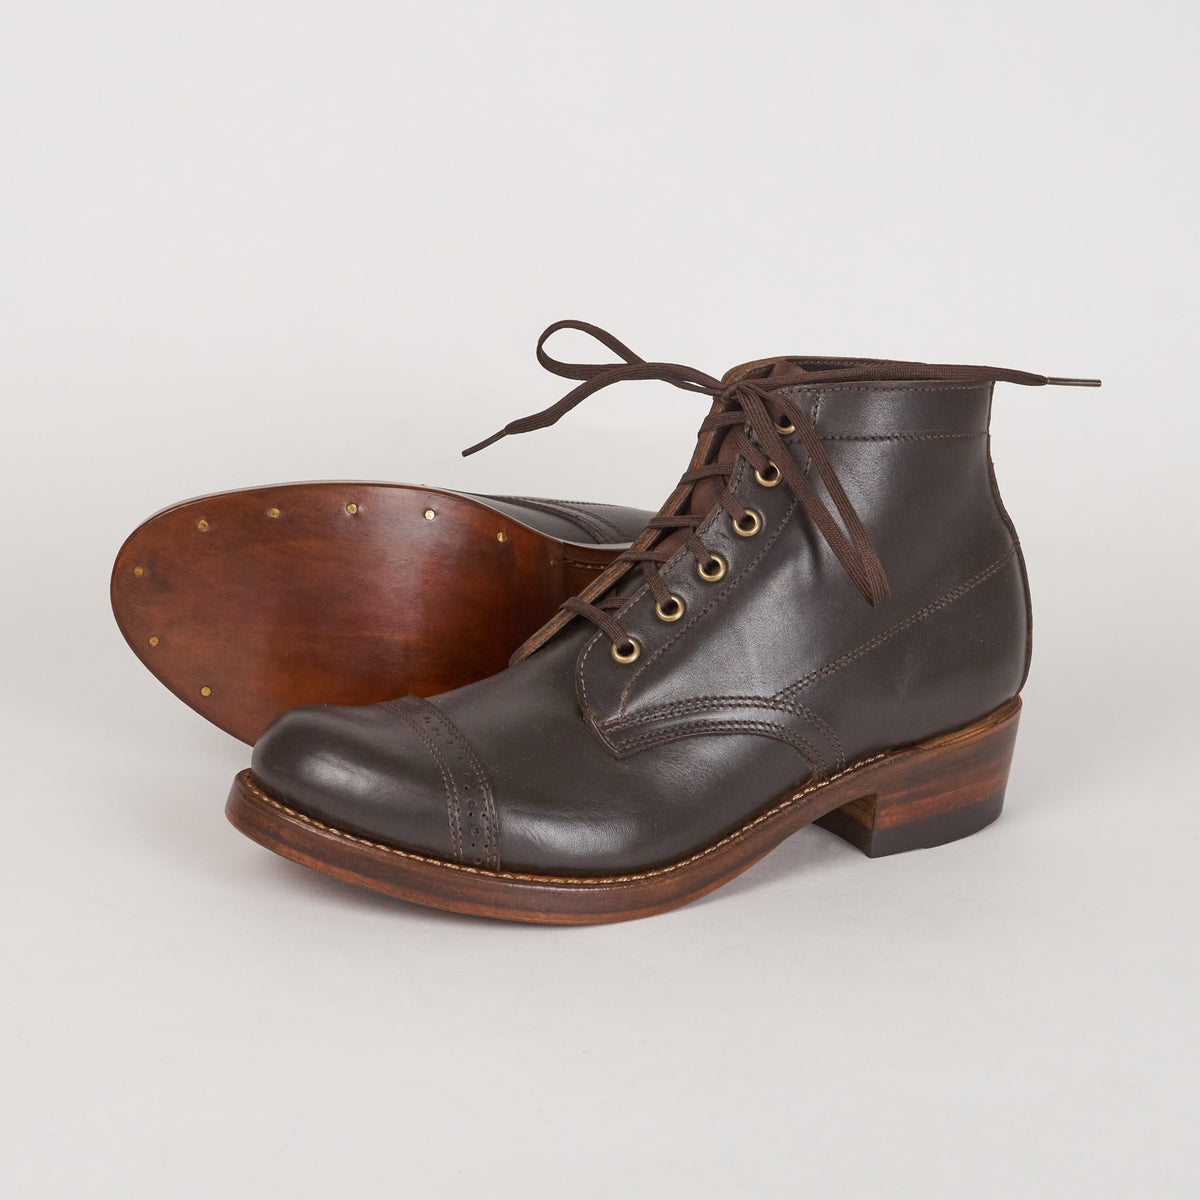 Julian Boots Saint James Leather Sole